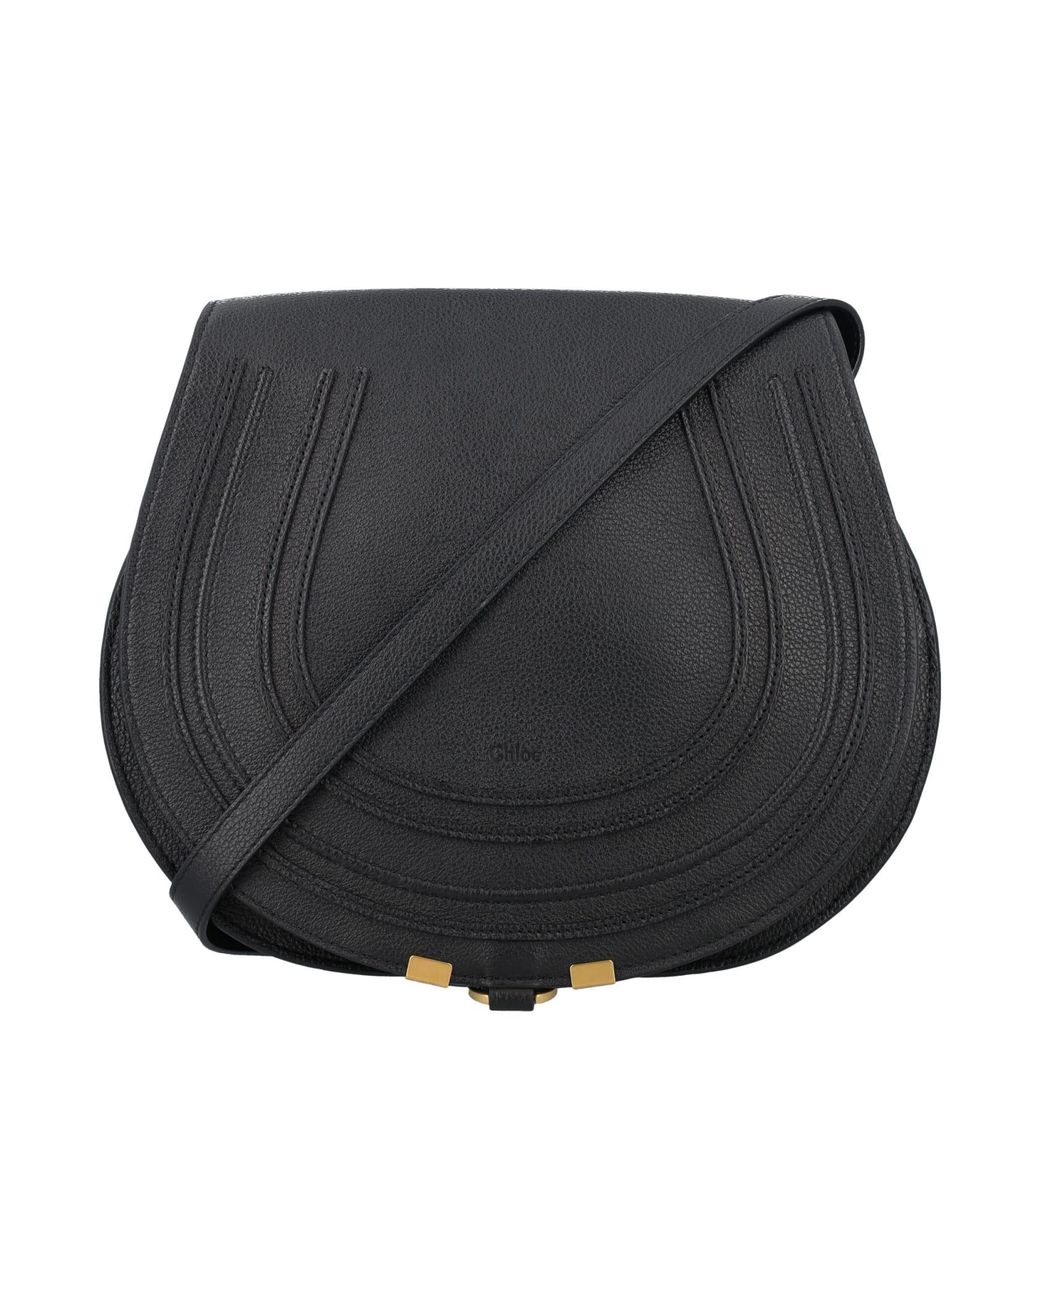 Chloé Marcie Medium Saddle Bag in Black | Lyst